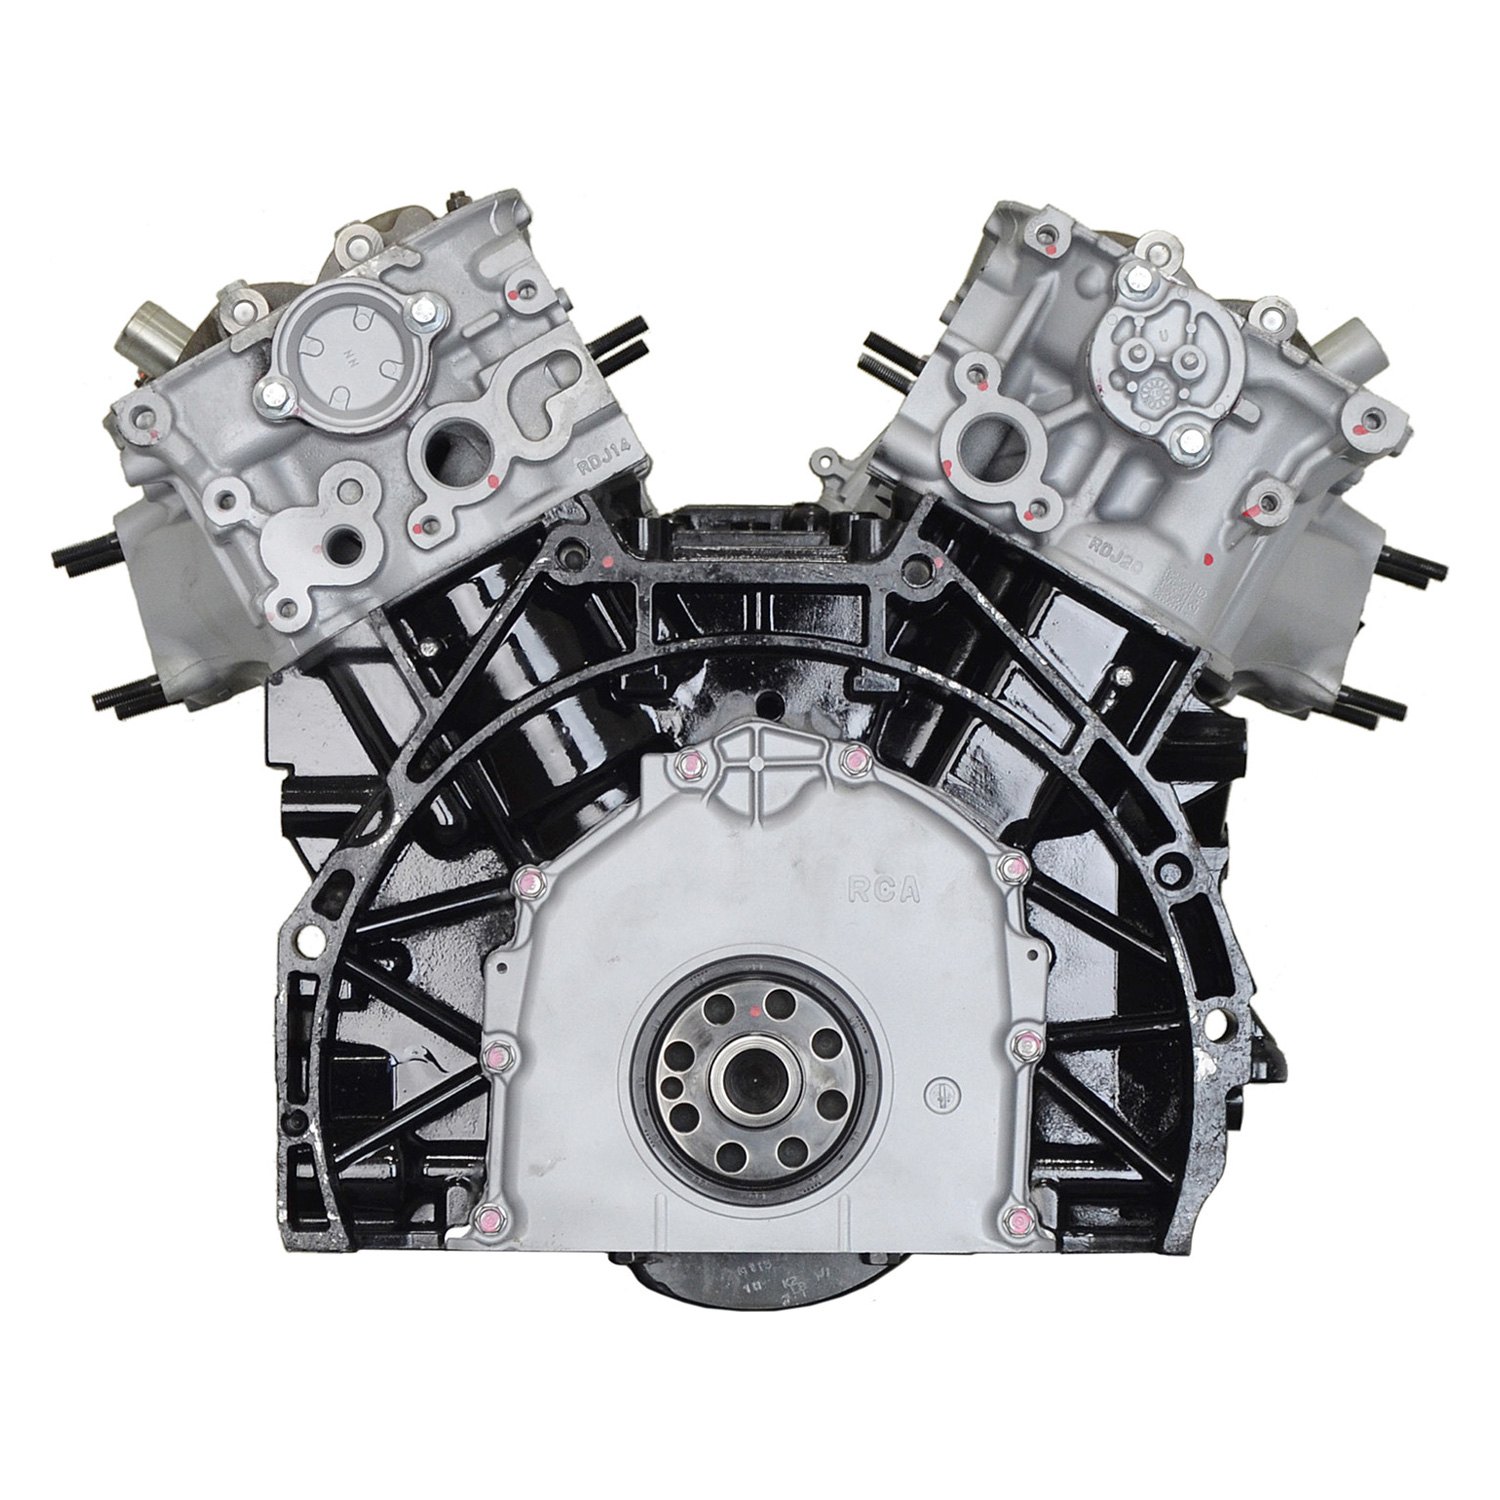 J35a двигатель. ДВС JT 3. Двигатель j100g. Xuh37350rk0000010 двигатель.